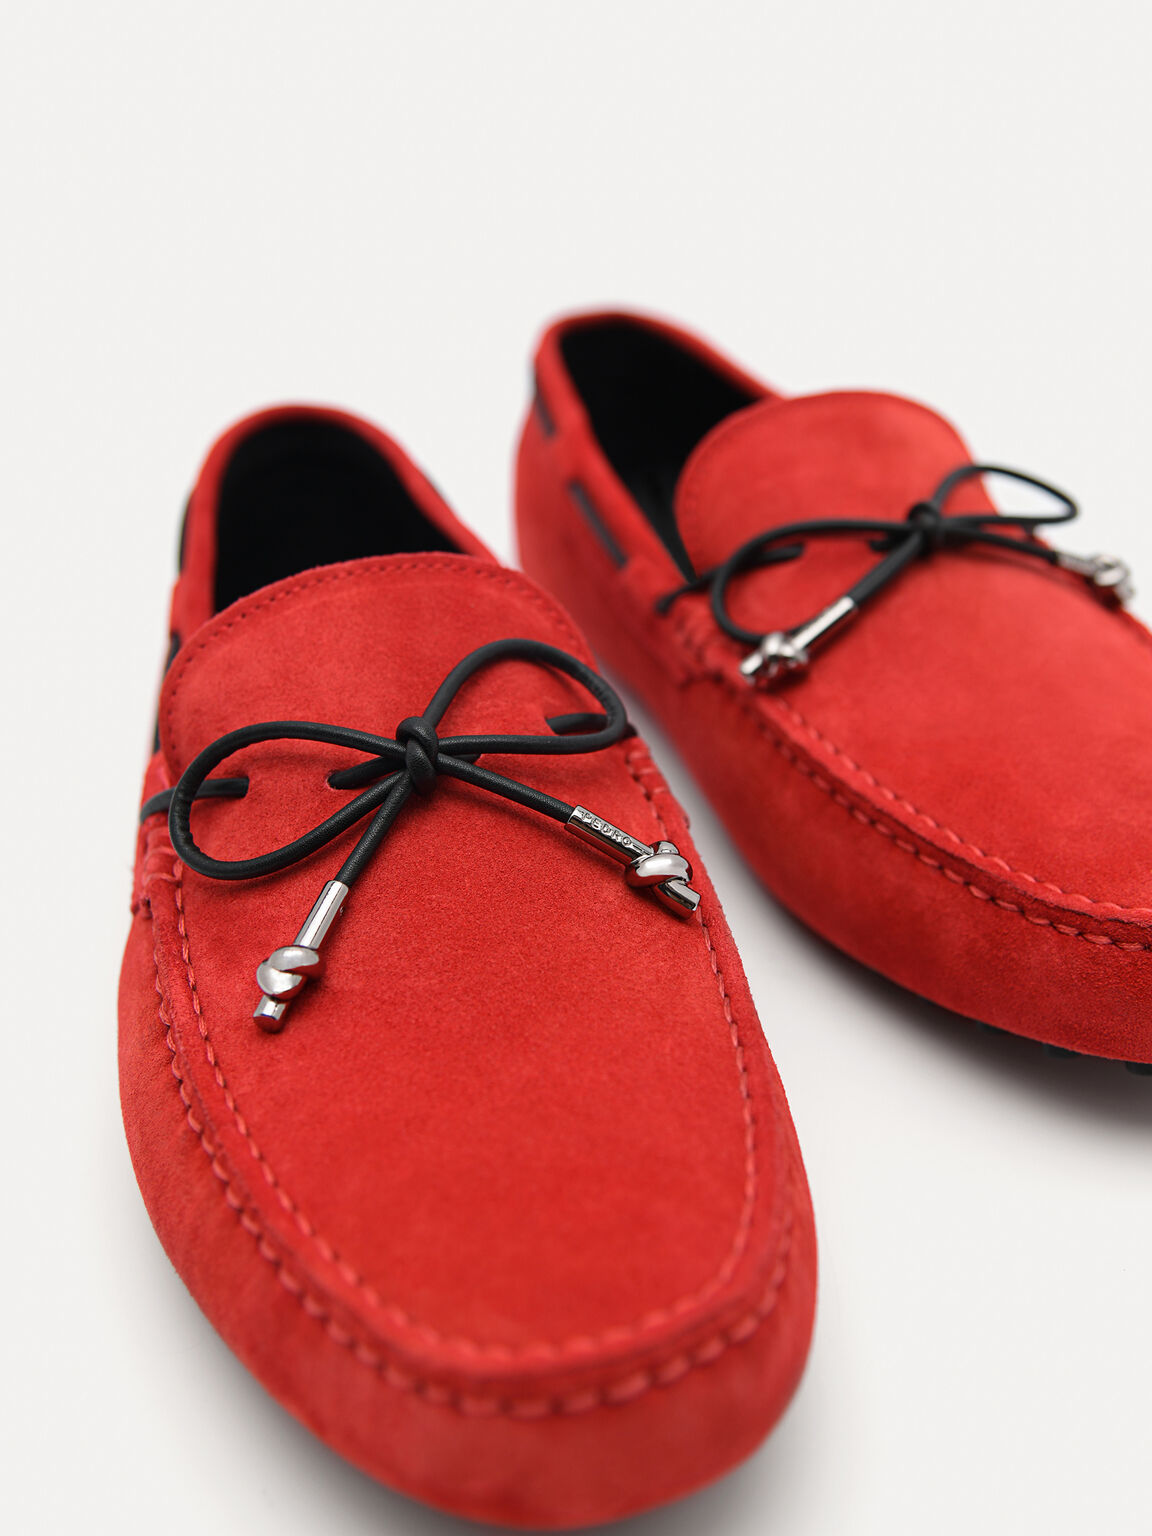 絨面皮革莫卡辛鞋配金屬裝飾鞋帶, 红色